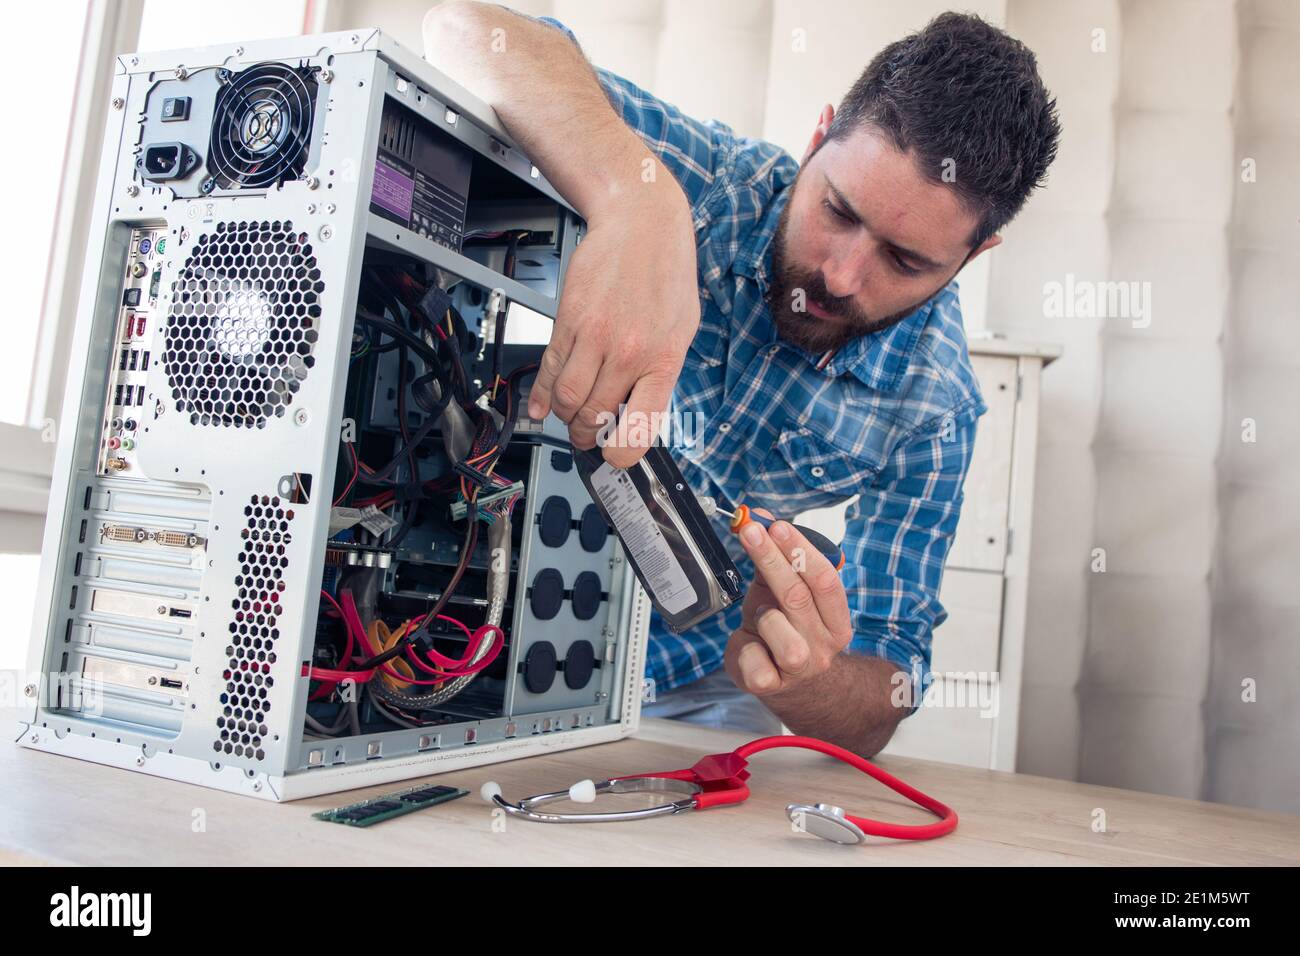 Engineer repairs computer's hard drive Stock Photo